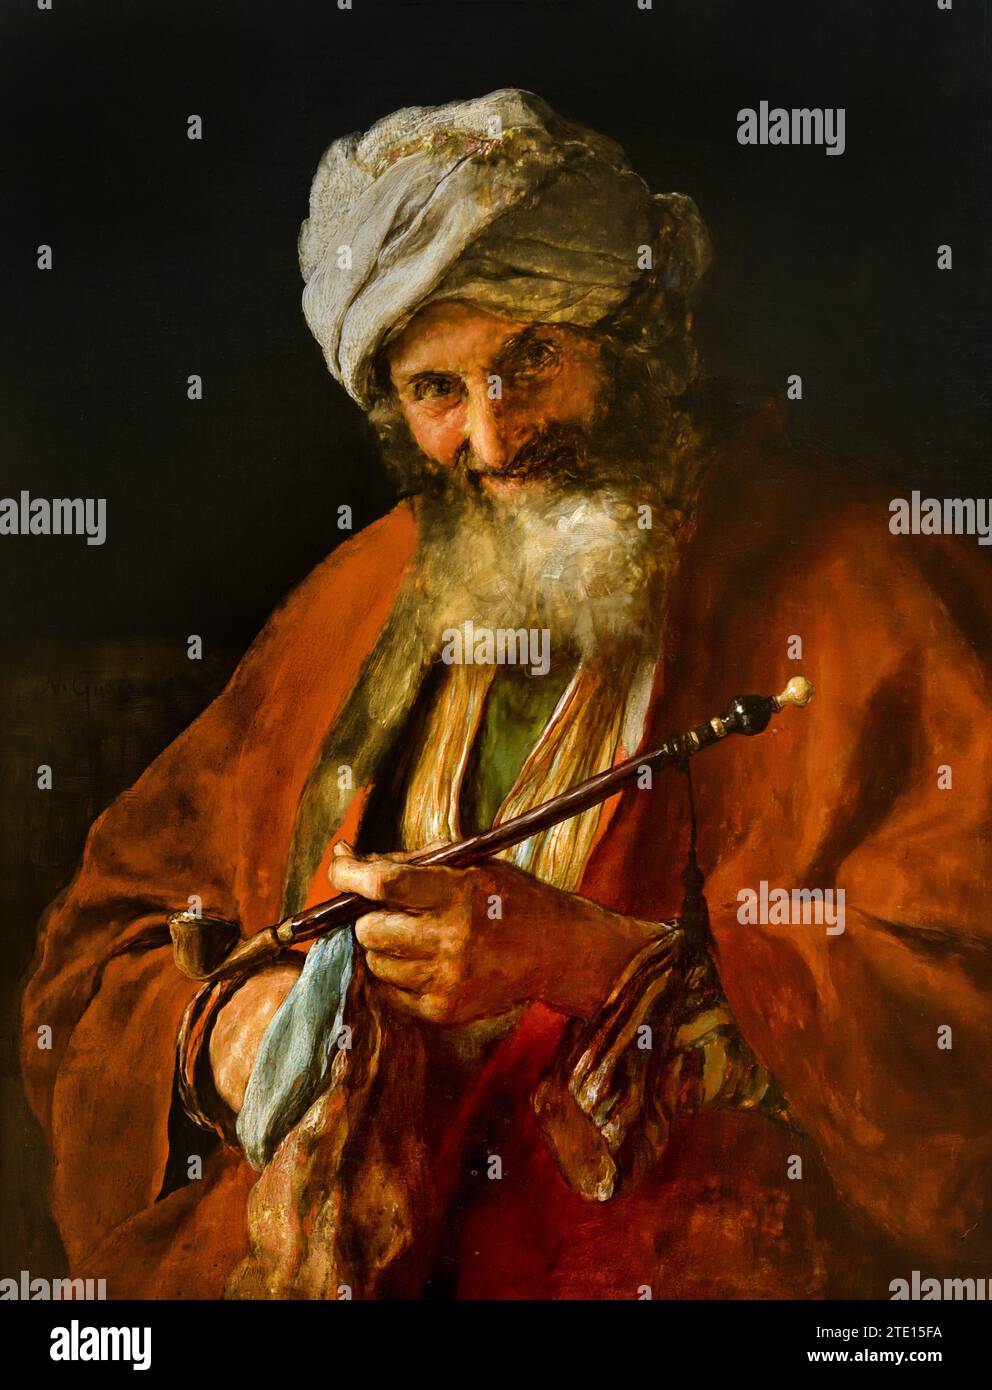 Gyzis Nikolaos (1842 - 1901) Moyen-Orient avec pipe , peinture 19RBA-20e siècle, Galerie nationale, Athènes, Grèce. Orientaliste, orientalisme Banque D'Images